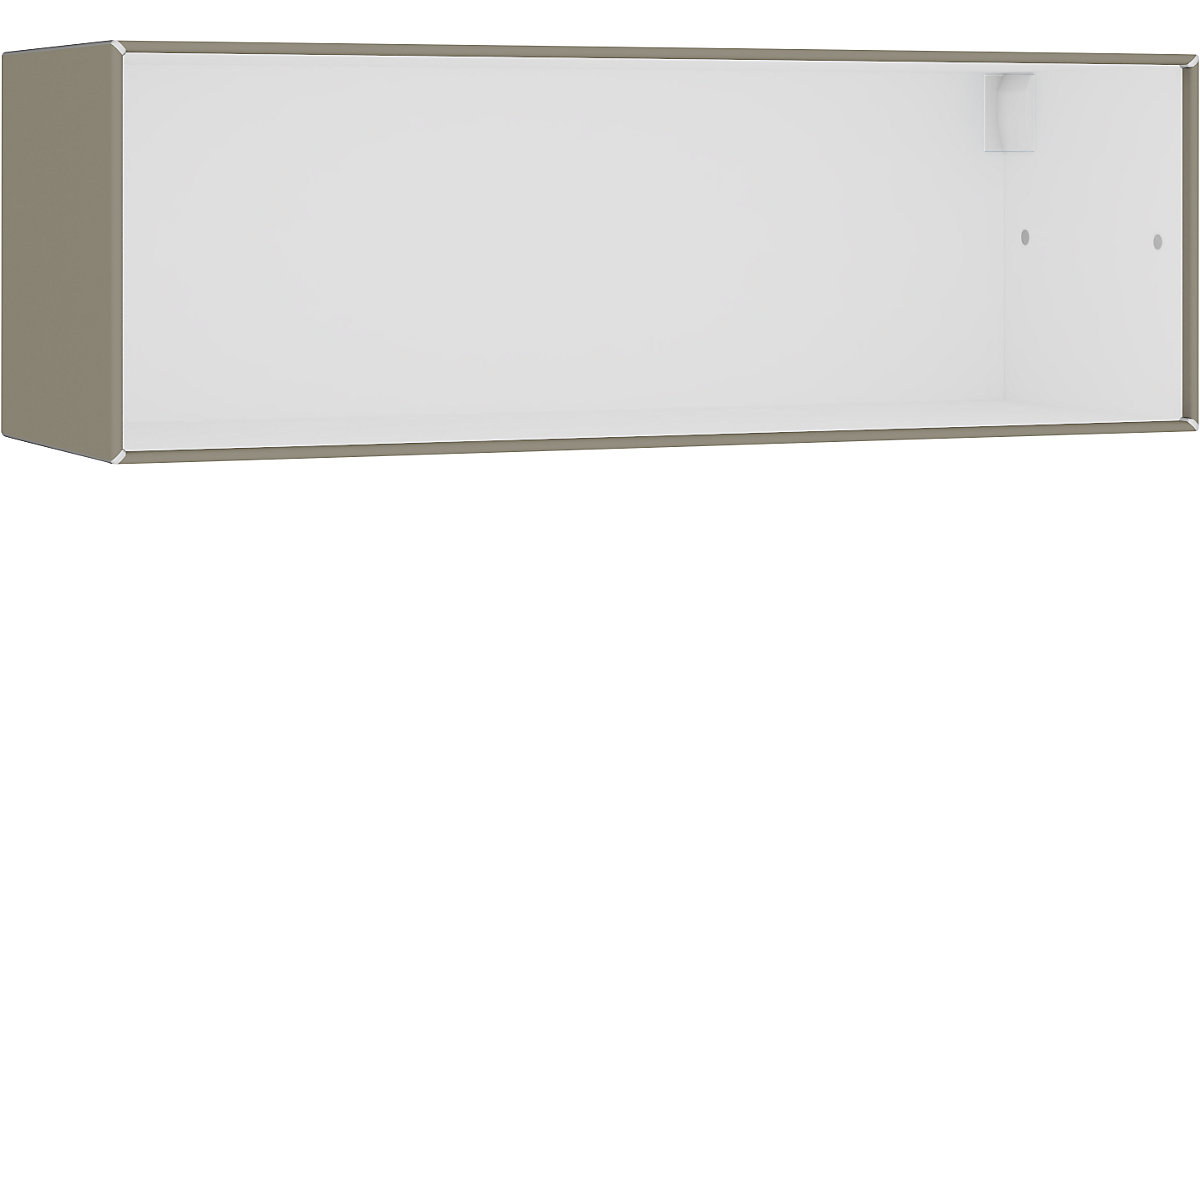 Compartimento individual abierto, para colgar – mauser, anchura 1155 mm, gris beige / blanco puro-2